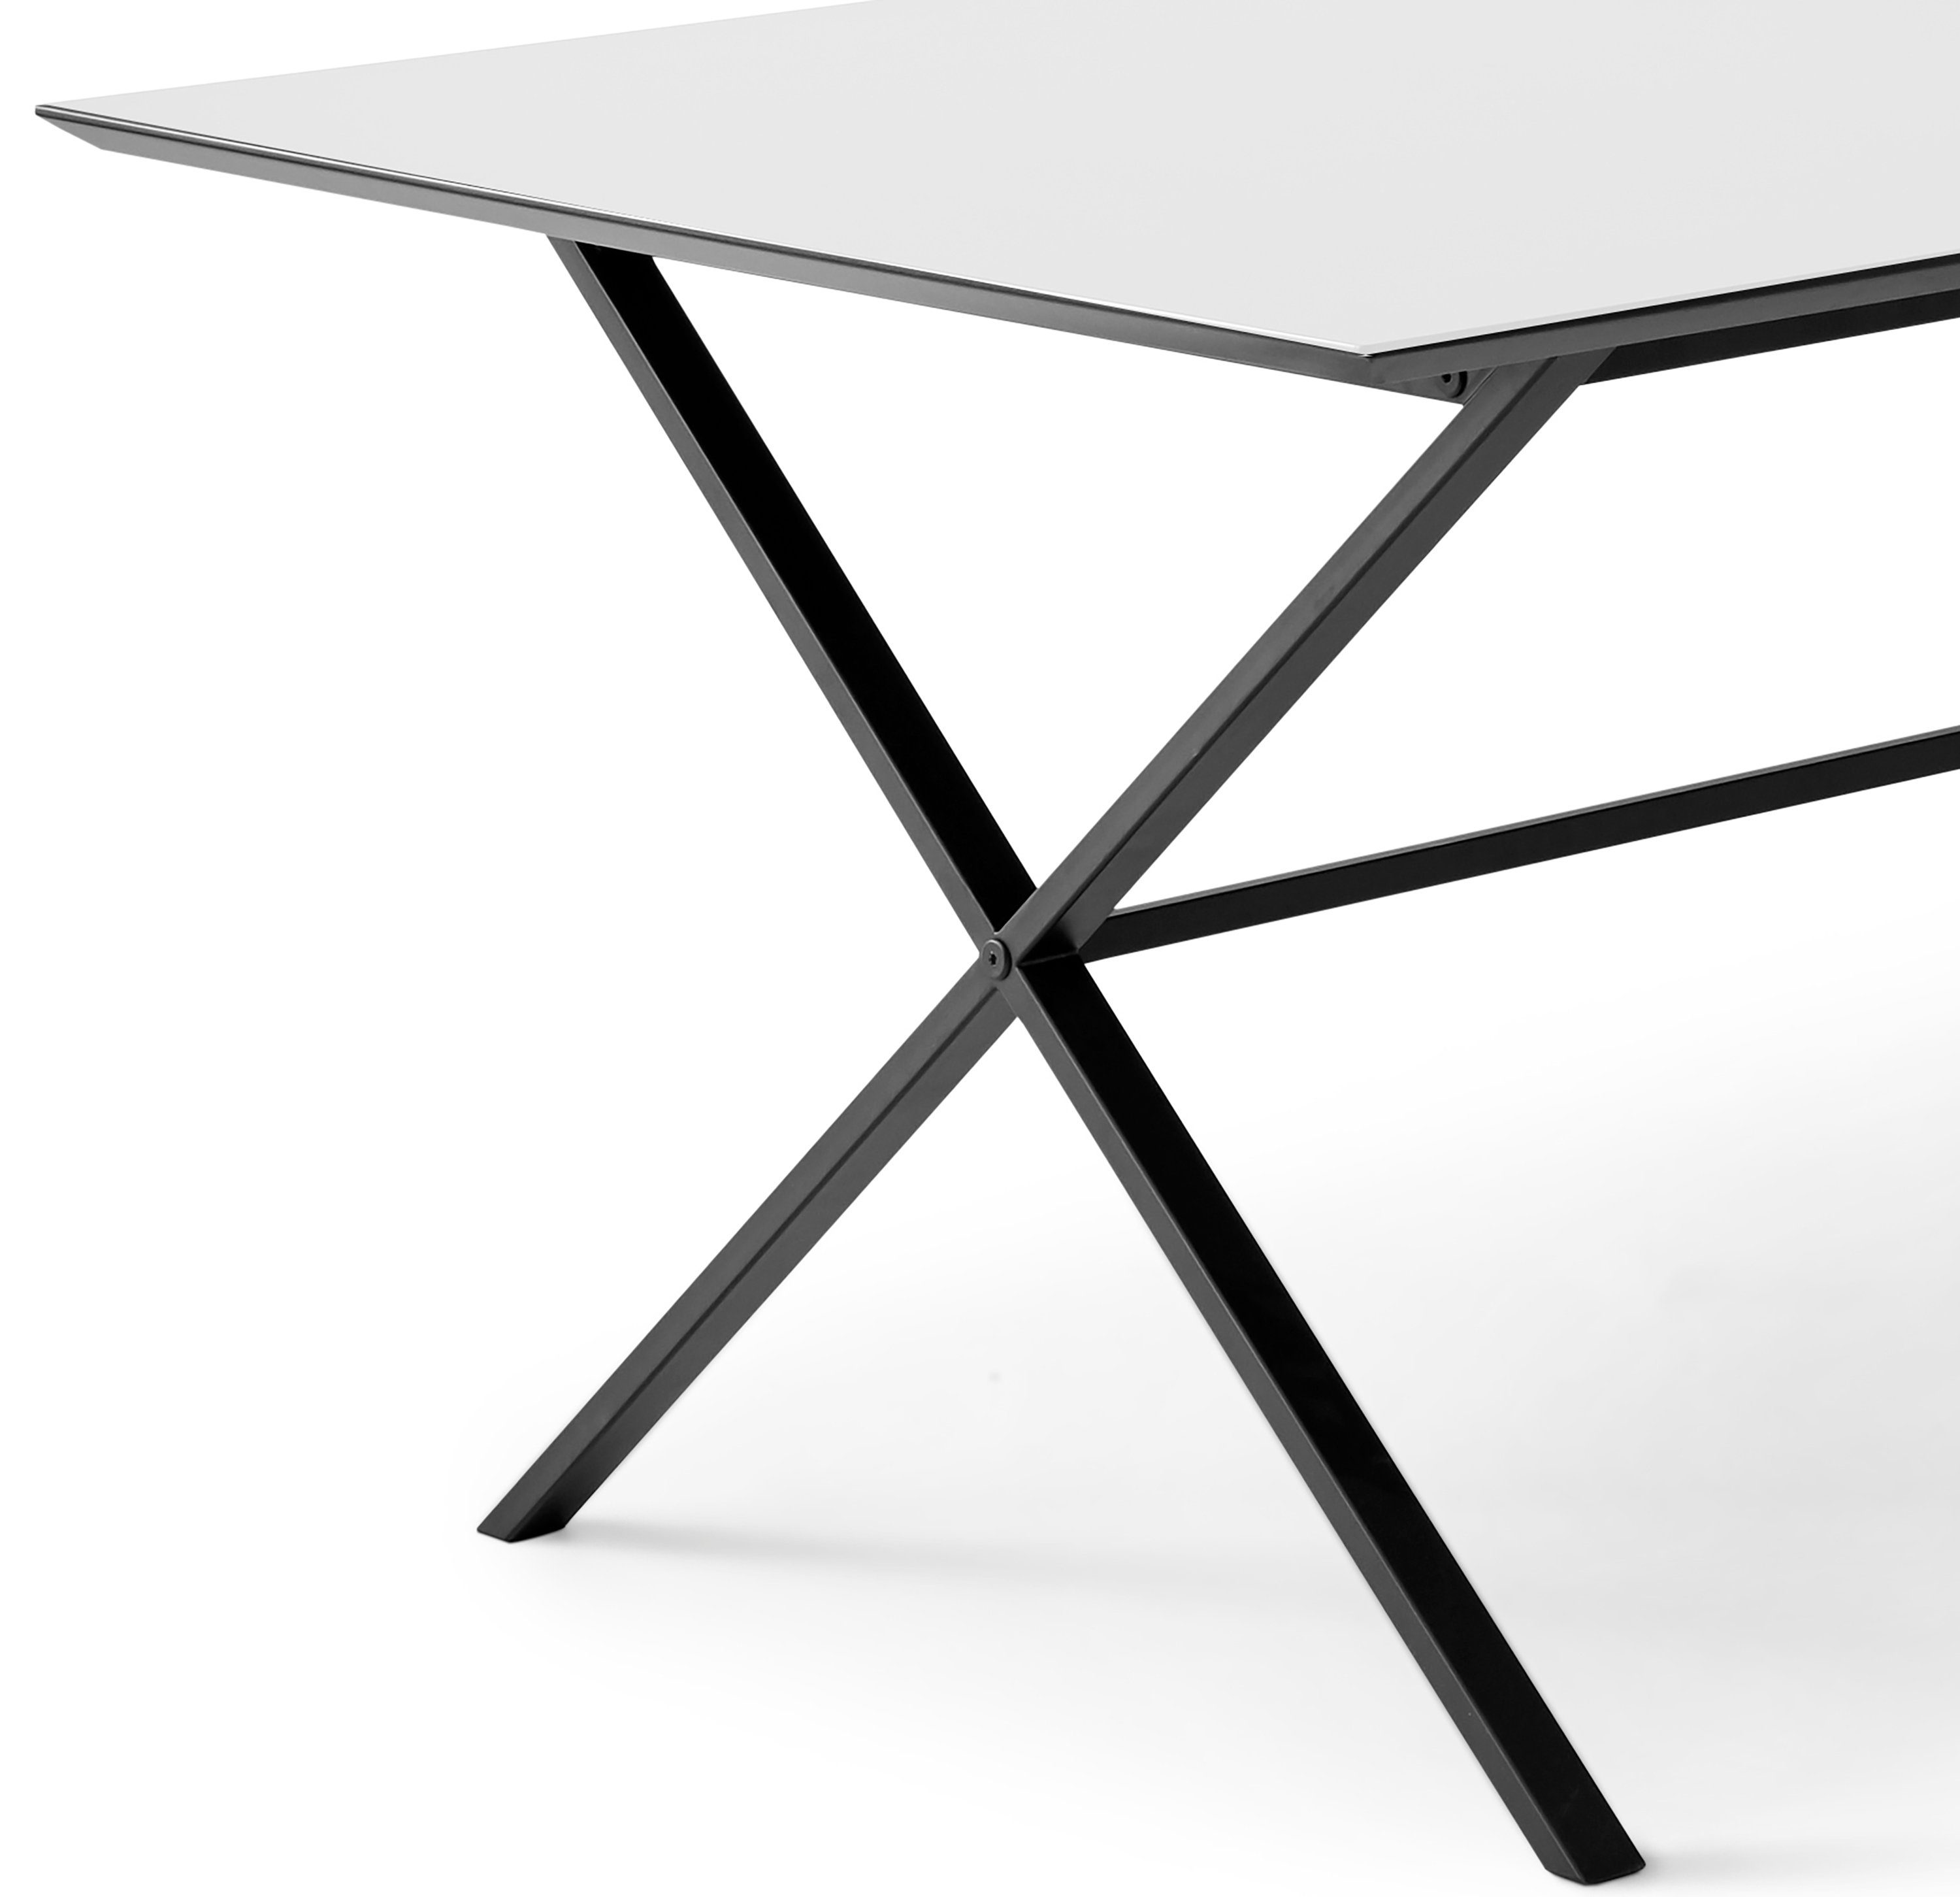 Hammel Furniture Esstisch Meza by gekreuztes Metallgestell Tischplatte Hammel, Weiß MDF, rechteckige